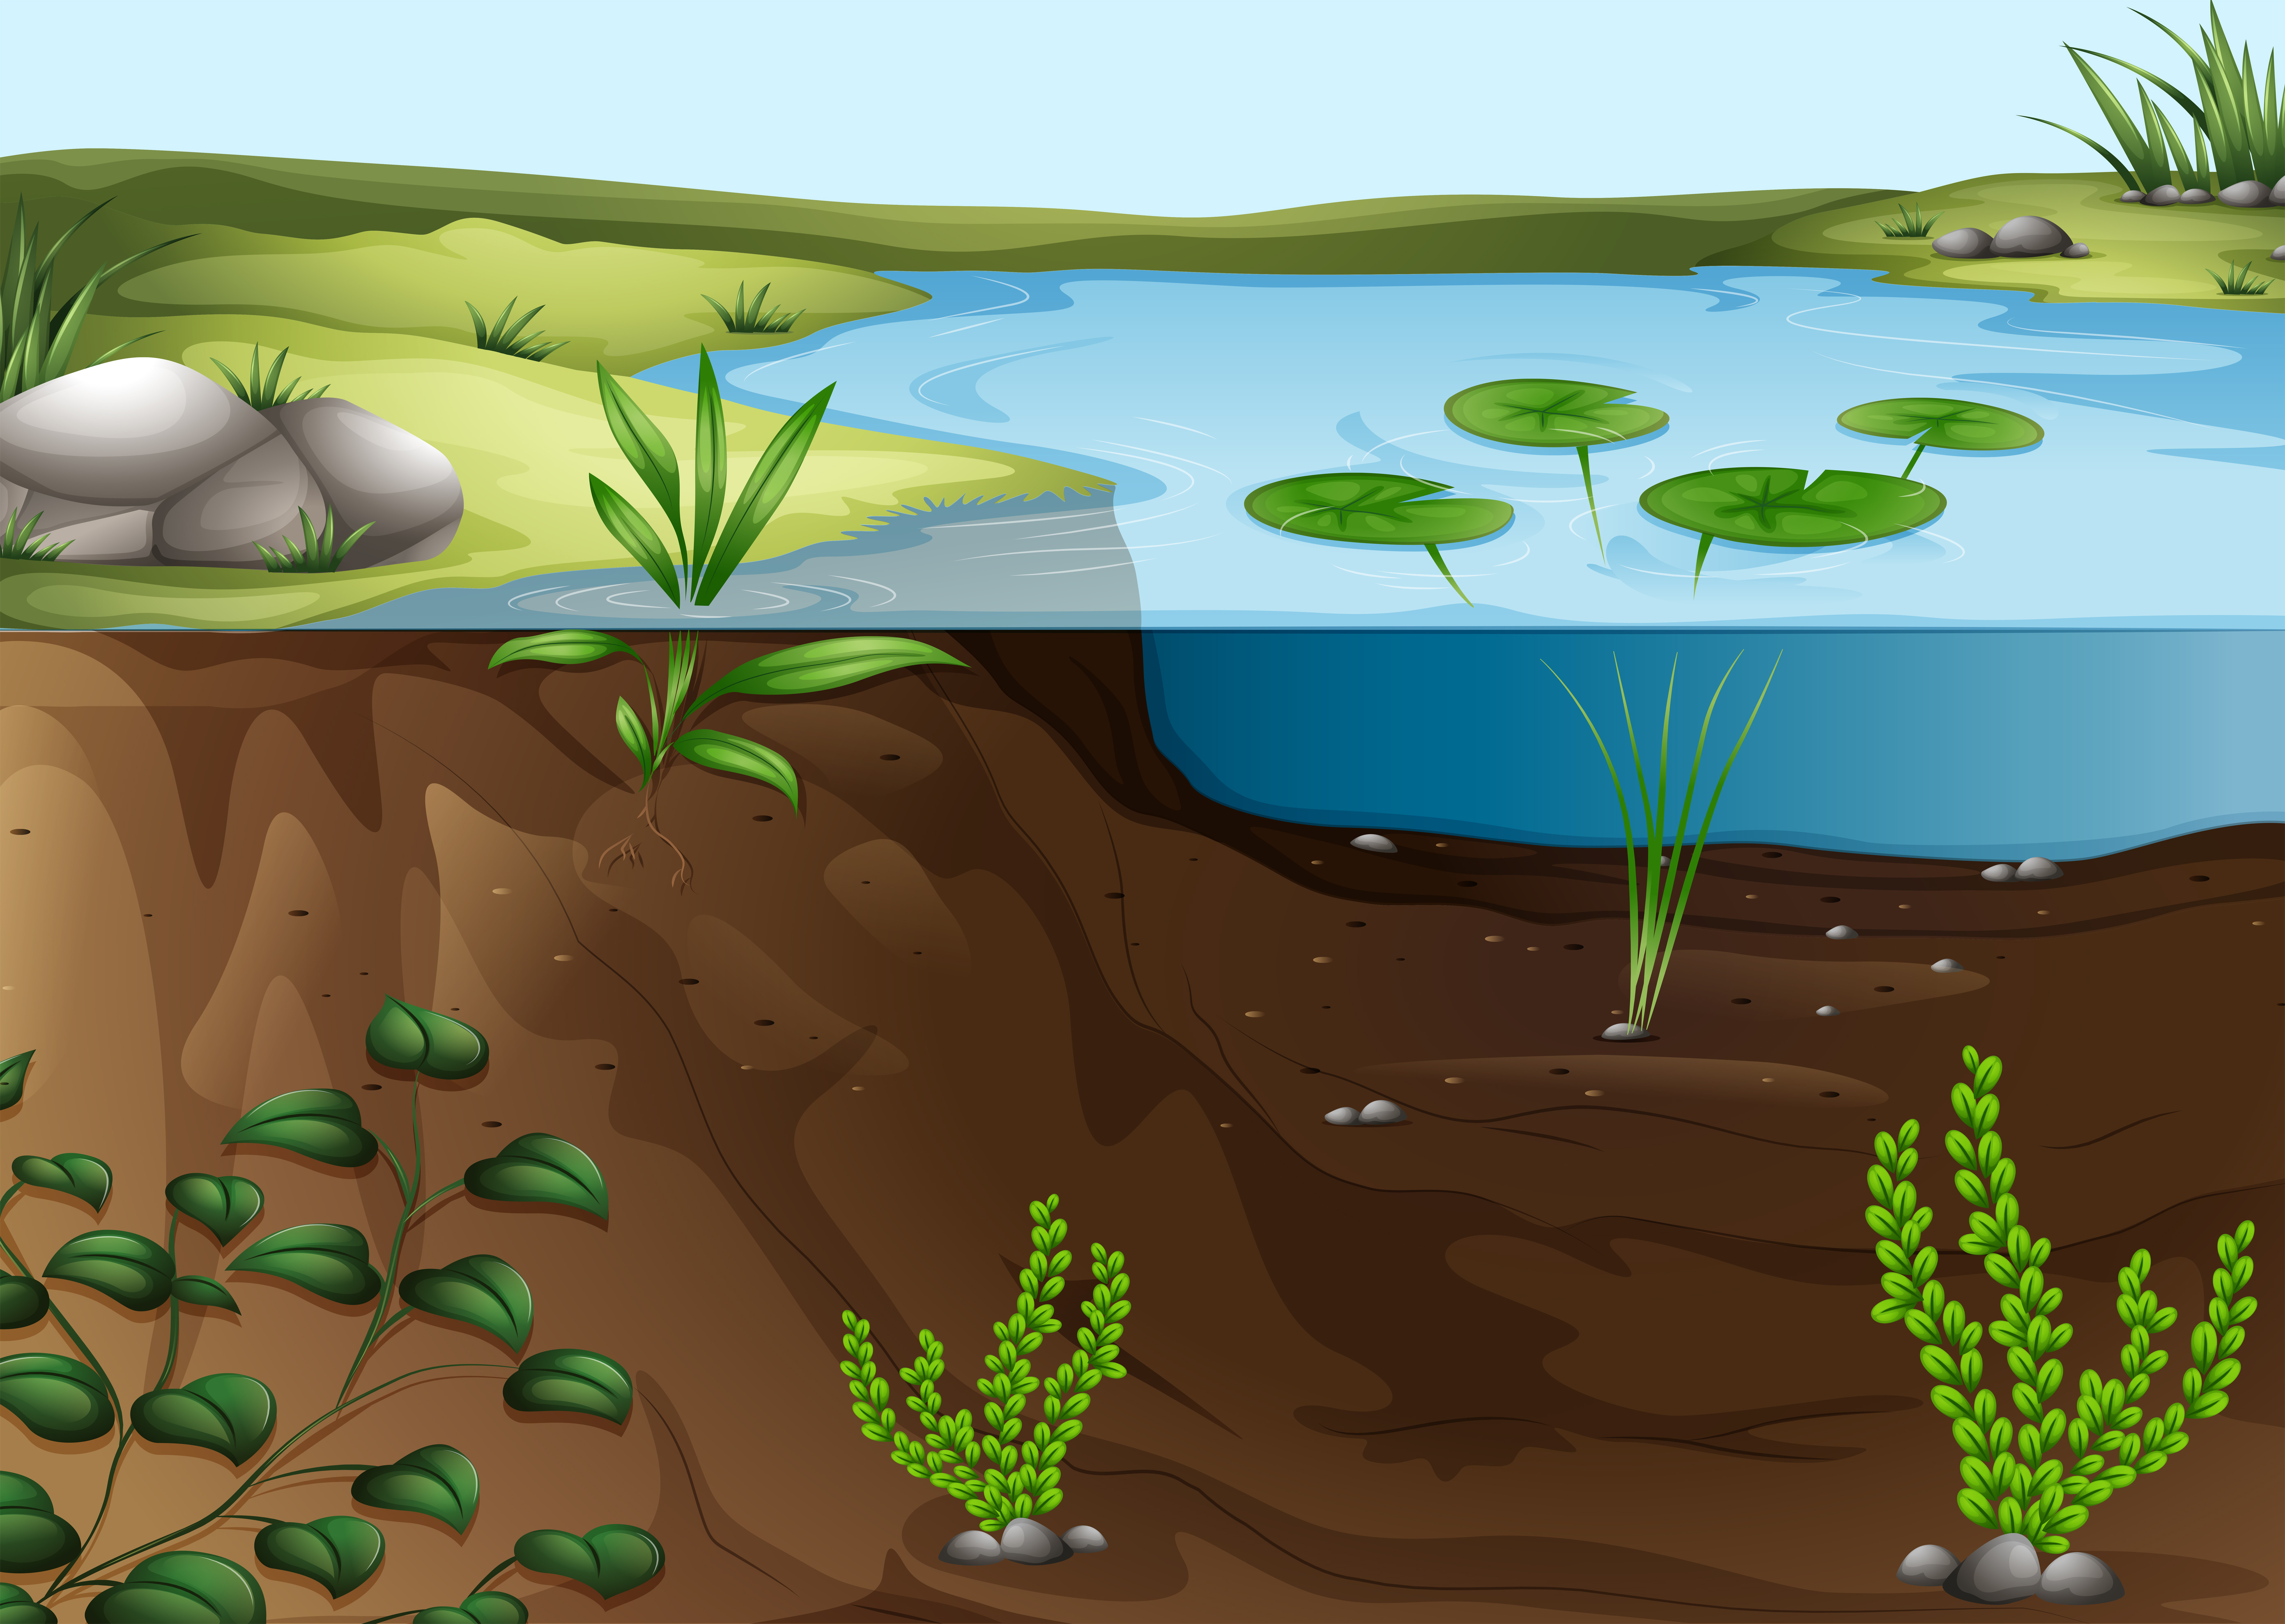 Изучите фрагмент экосистемы водоема представленный